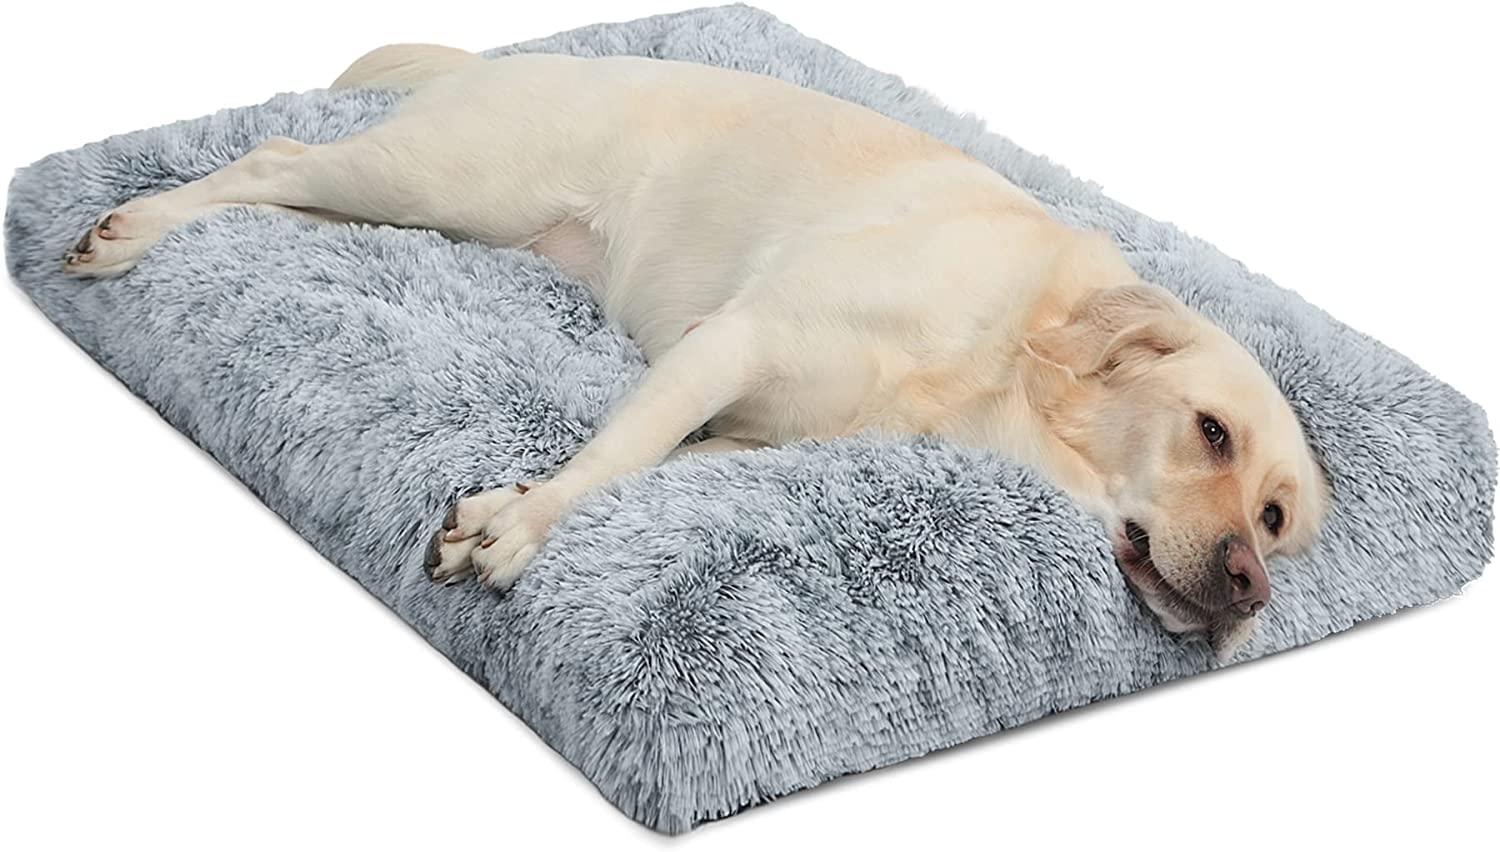 WAYIMPRESS Large Dog Crate Bed